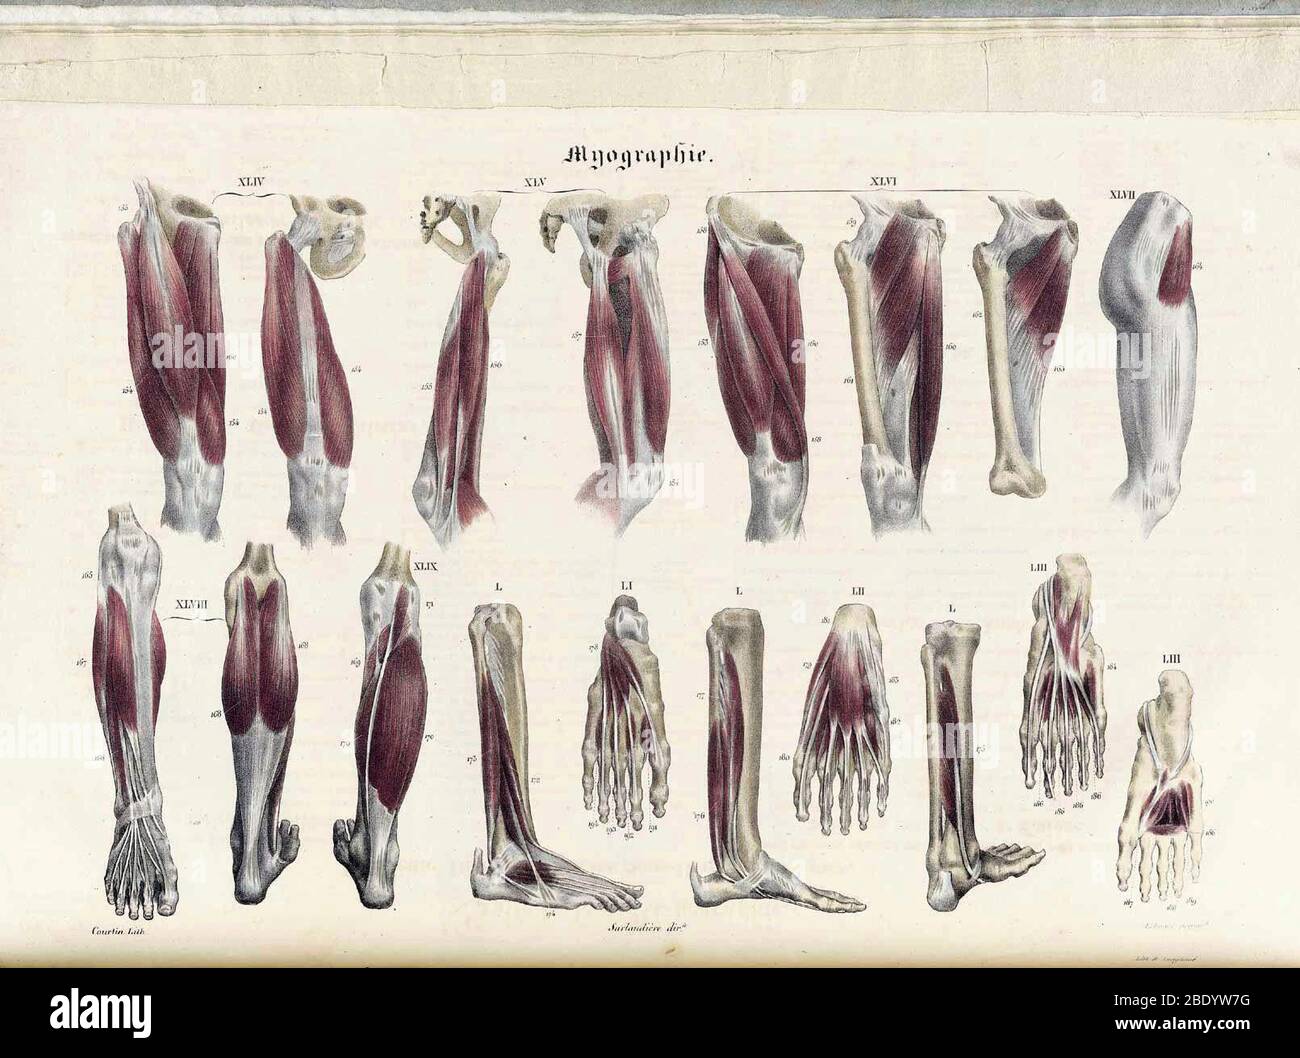 Ilustraciones de Anatomie Methodique Foto de stock